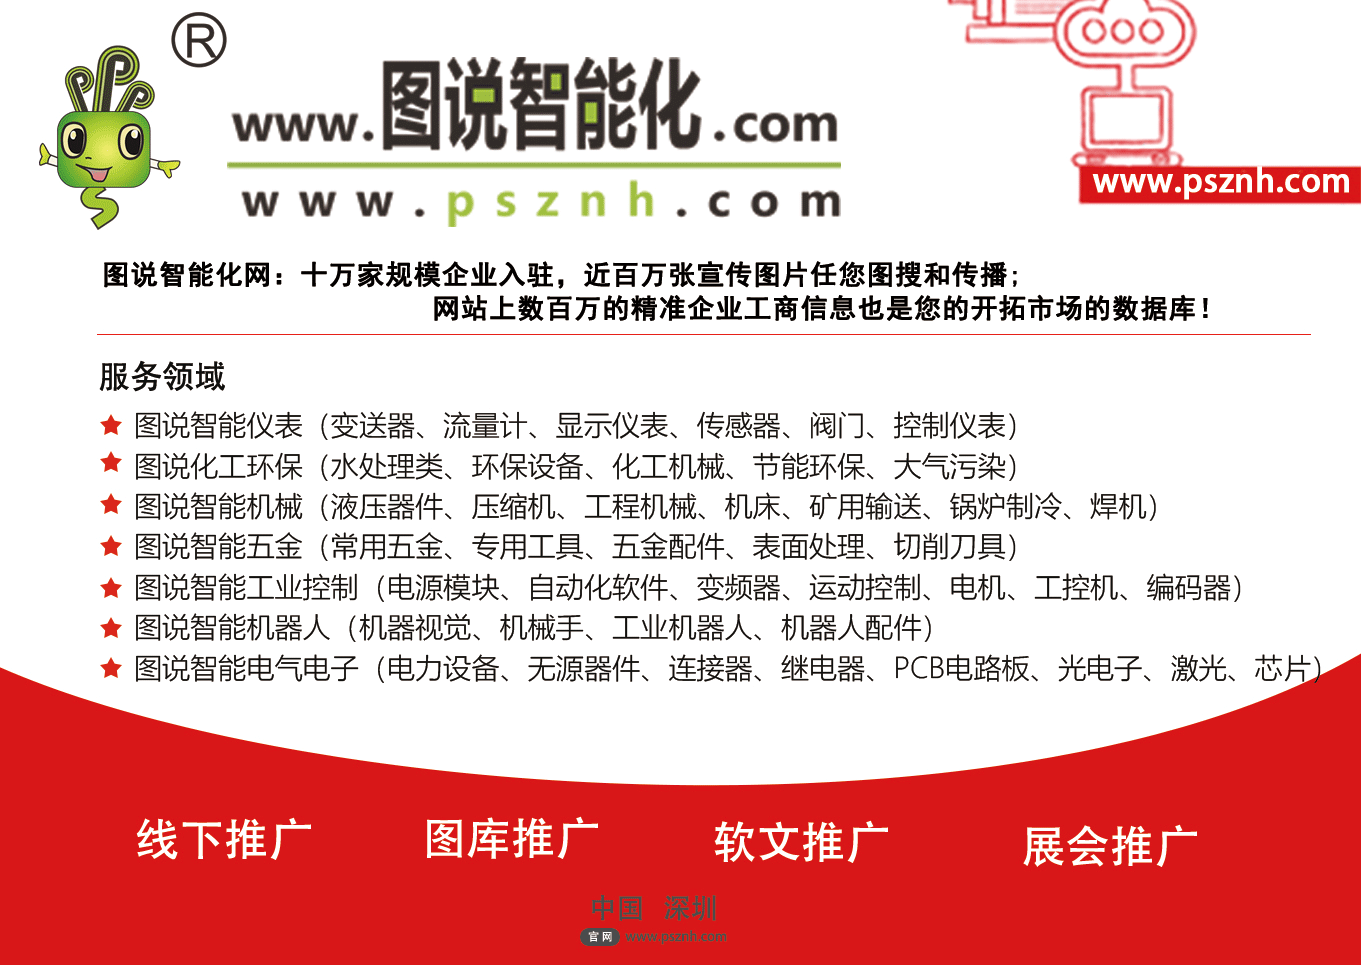 2019年7月深圳和广州展会排期表